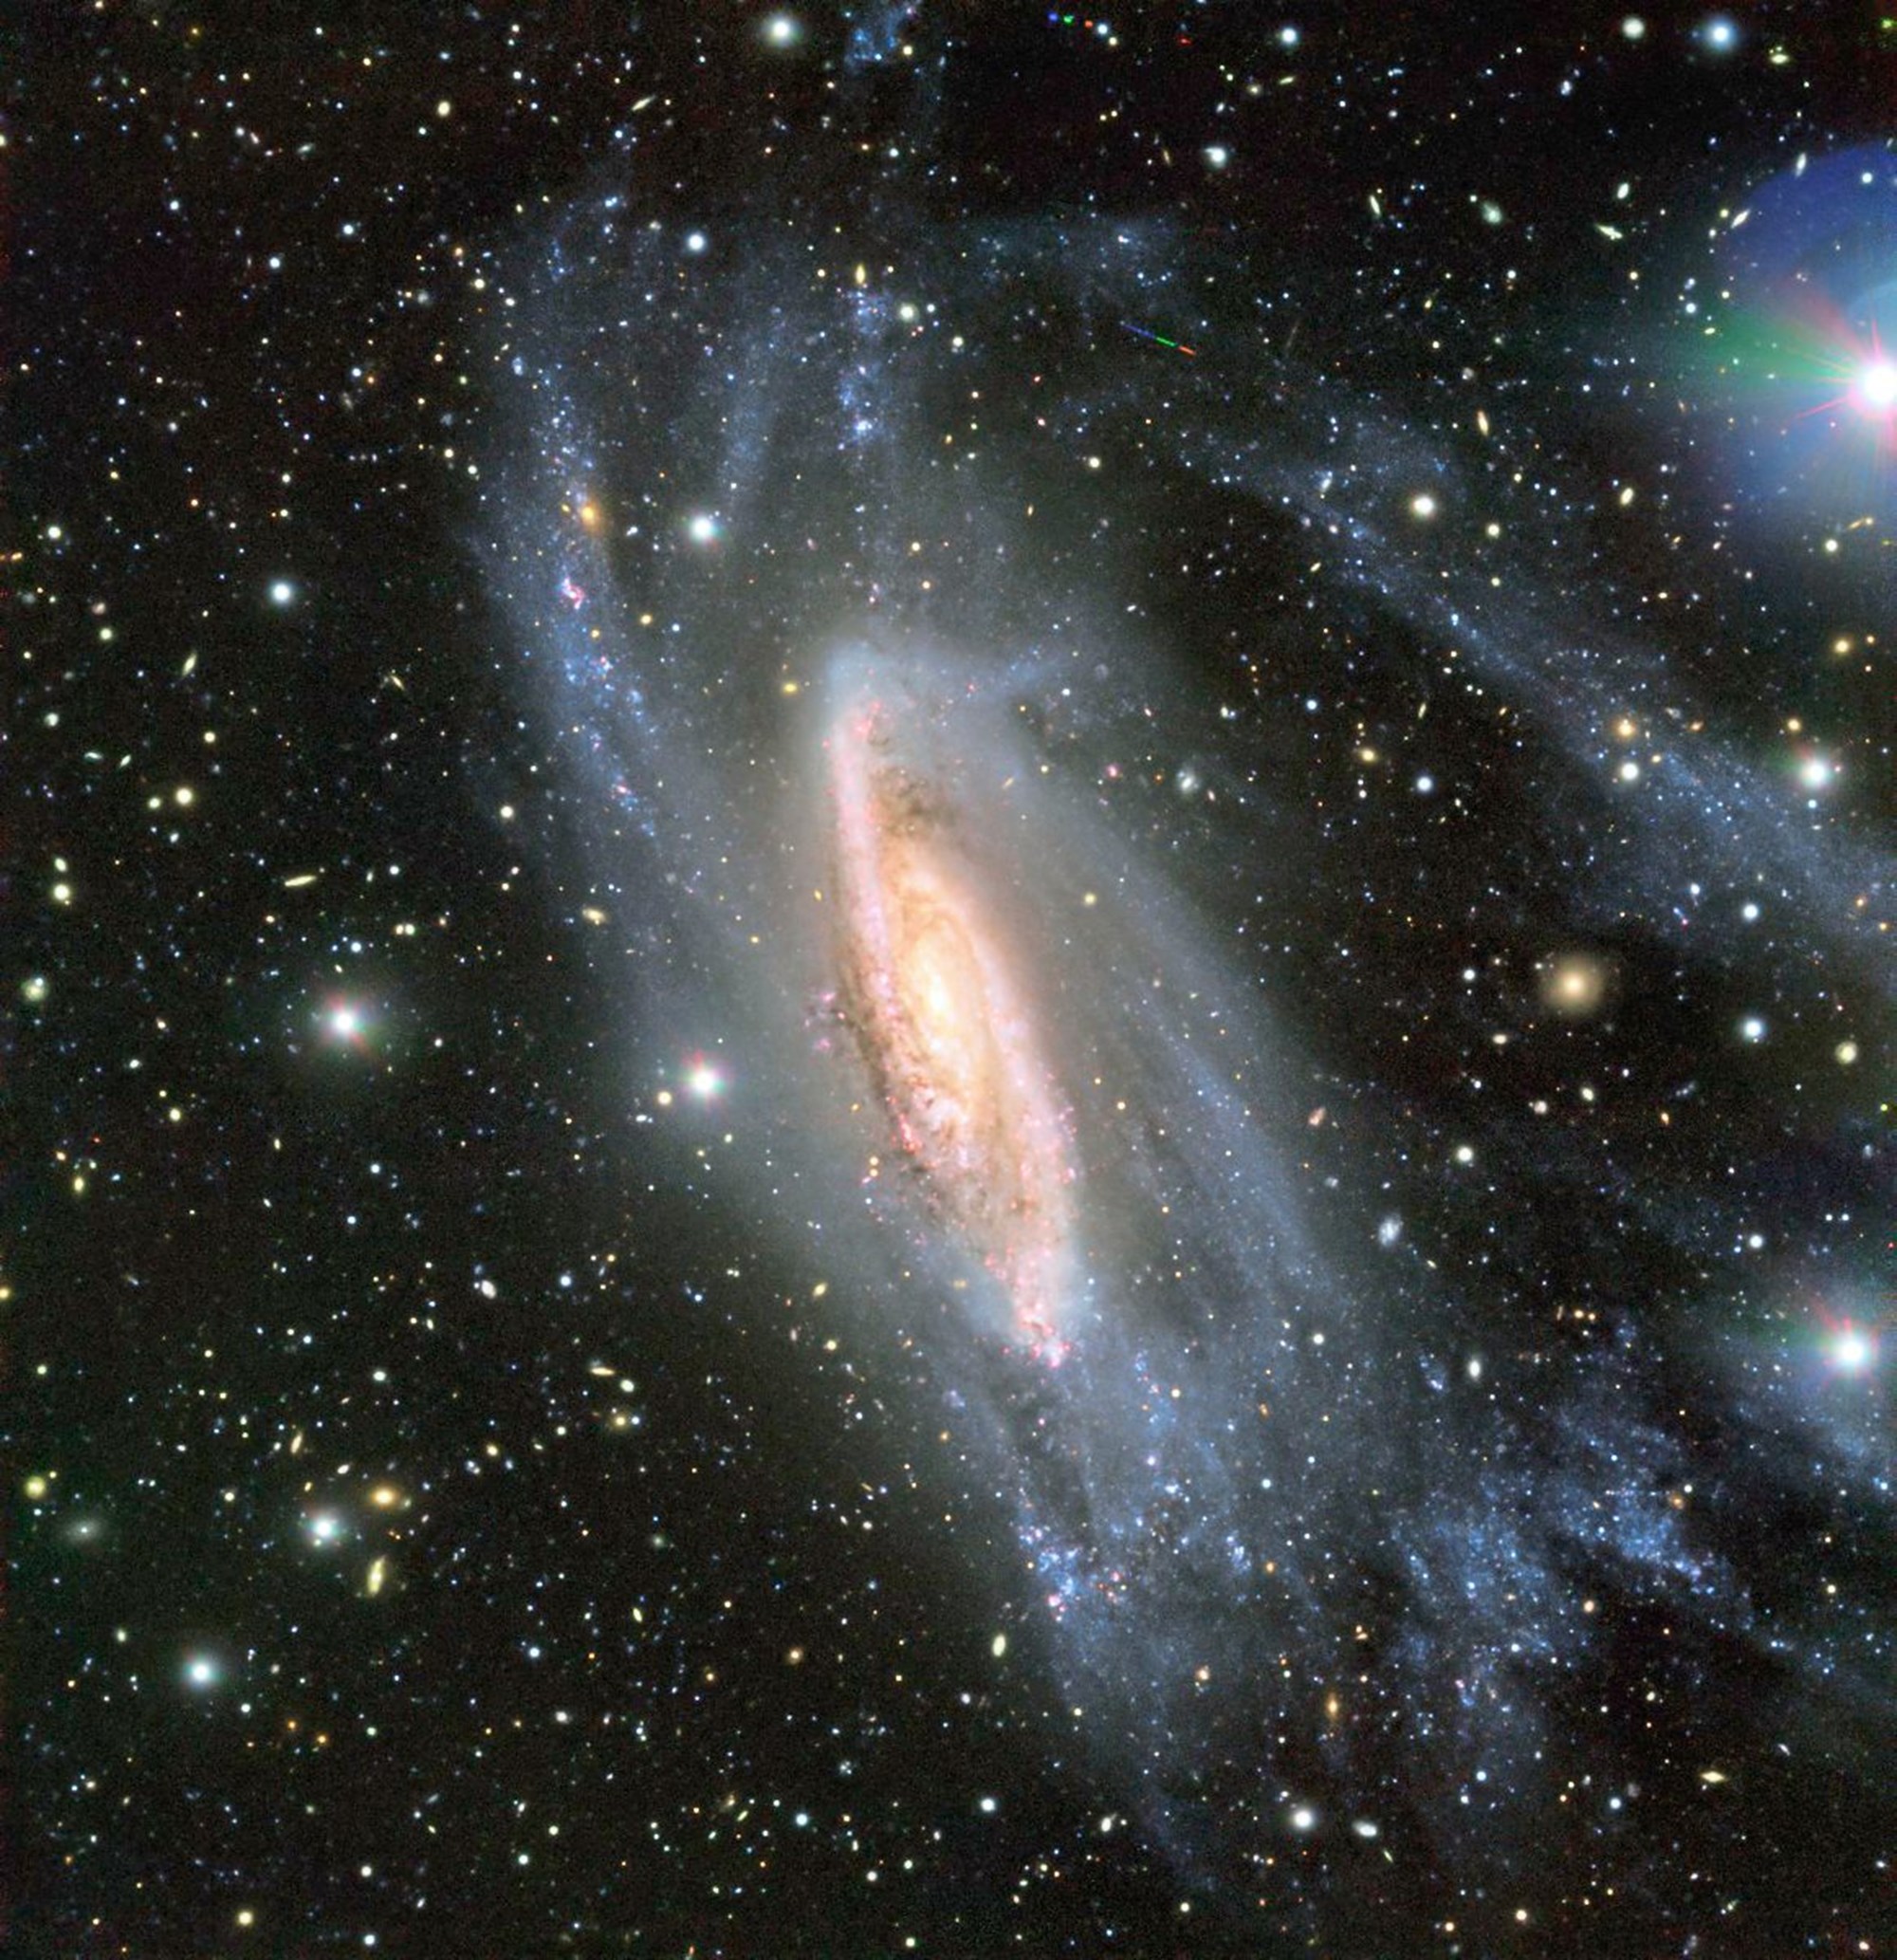 galaxieBreiteKLEINER1200pix.jpg